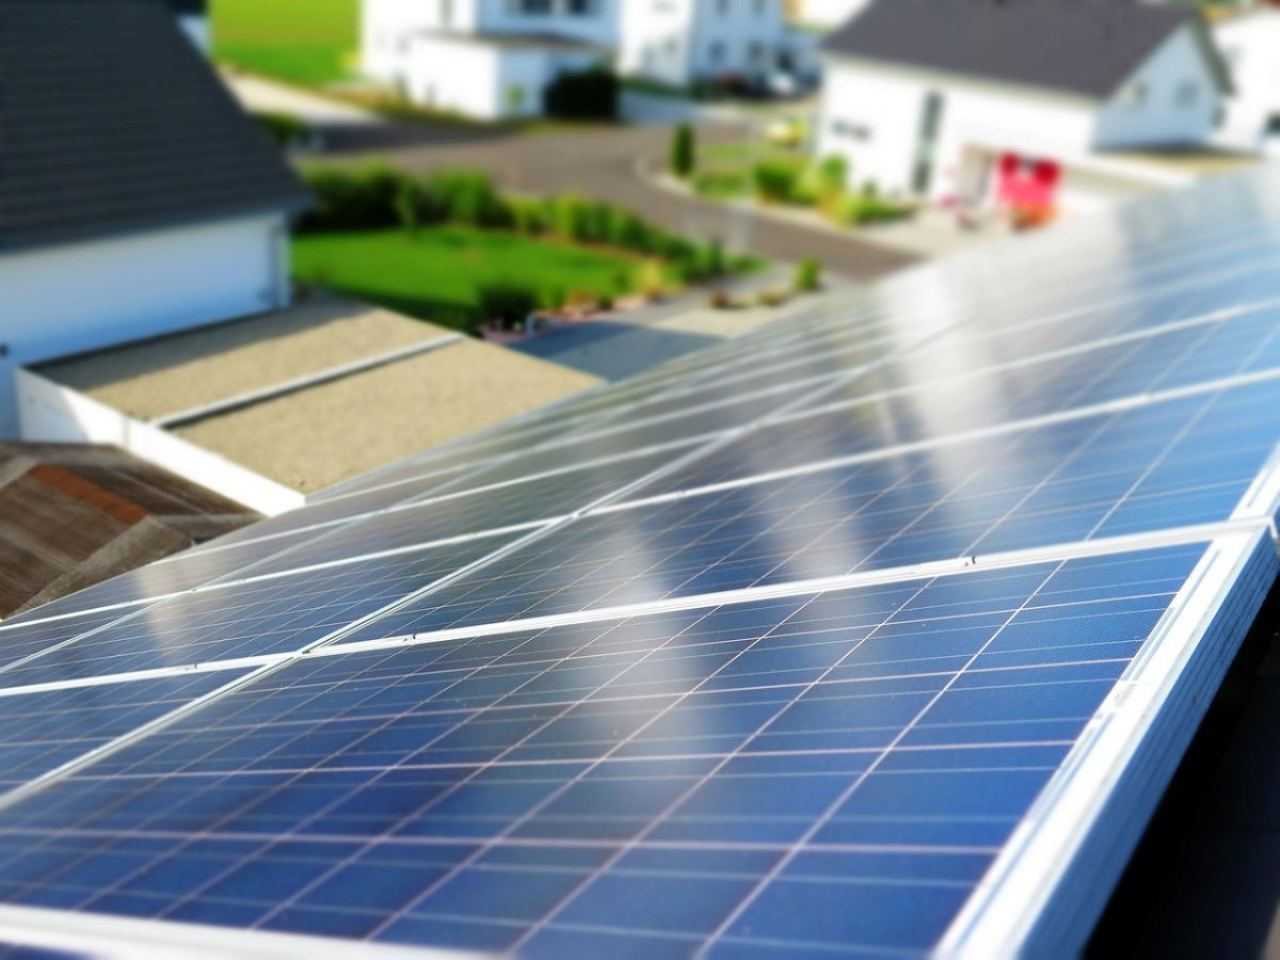 I proprietari dei pannelli solari non lo sanno: “Allora hai diritto a un risarcimento”.